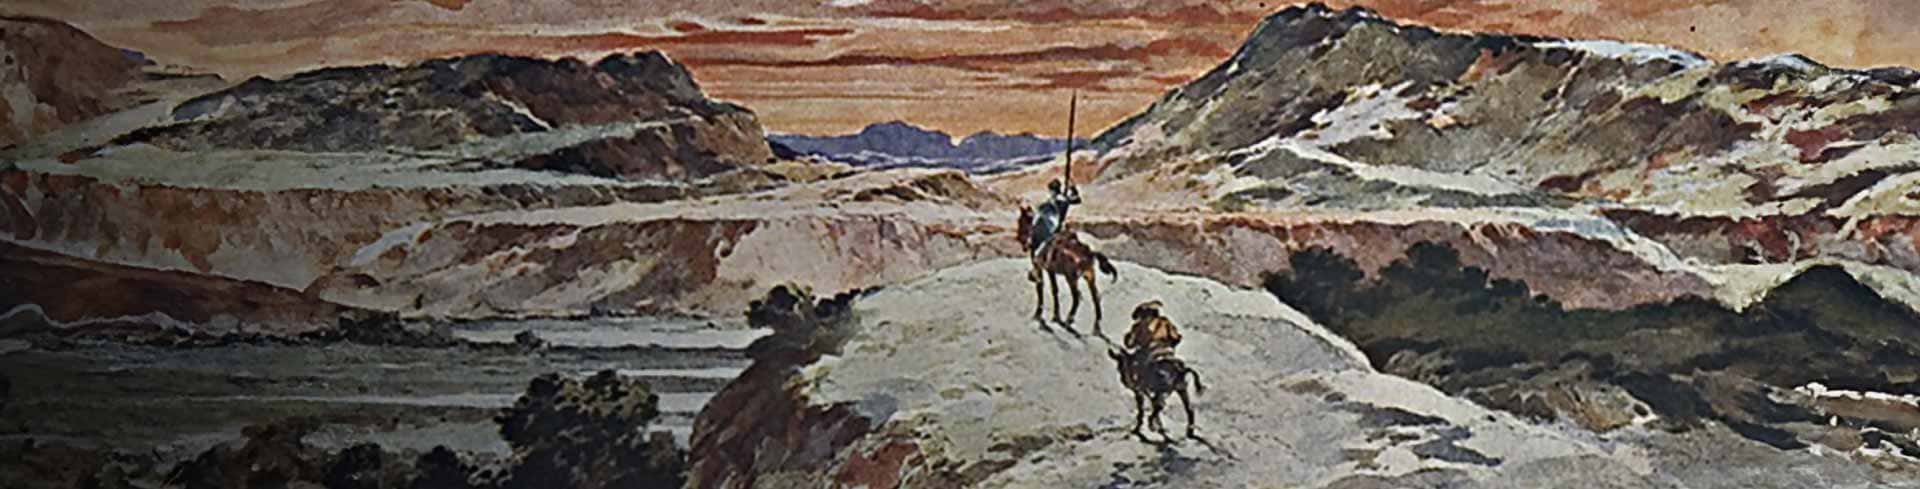 Un viaje a través de la literatura: Don Quijote de la Mancha